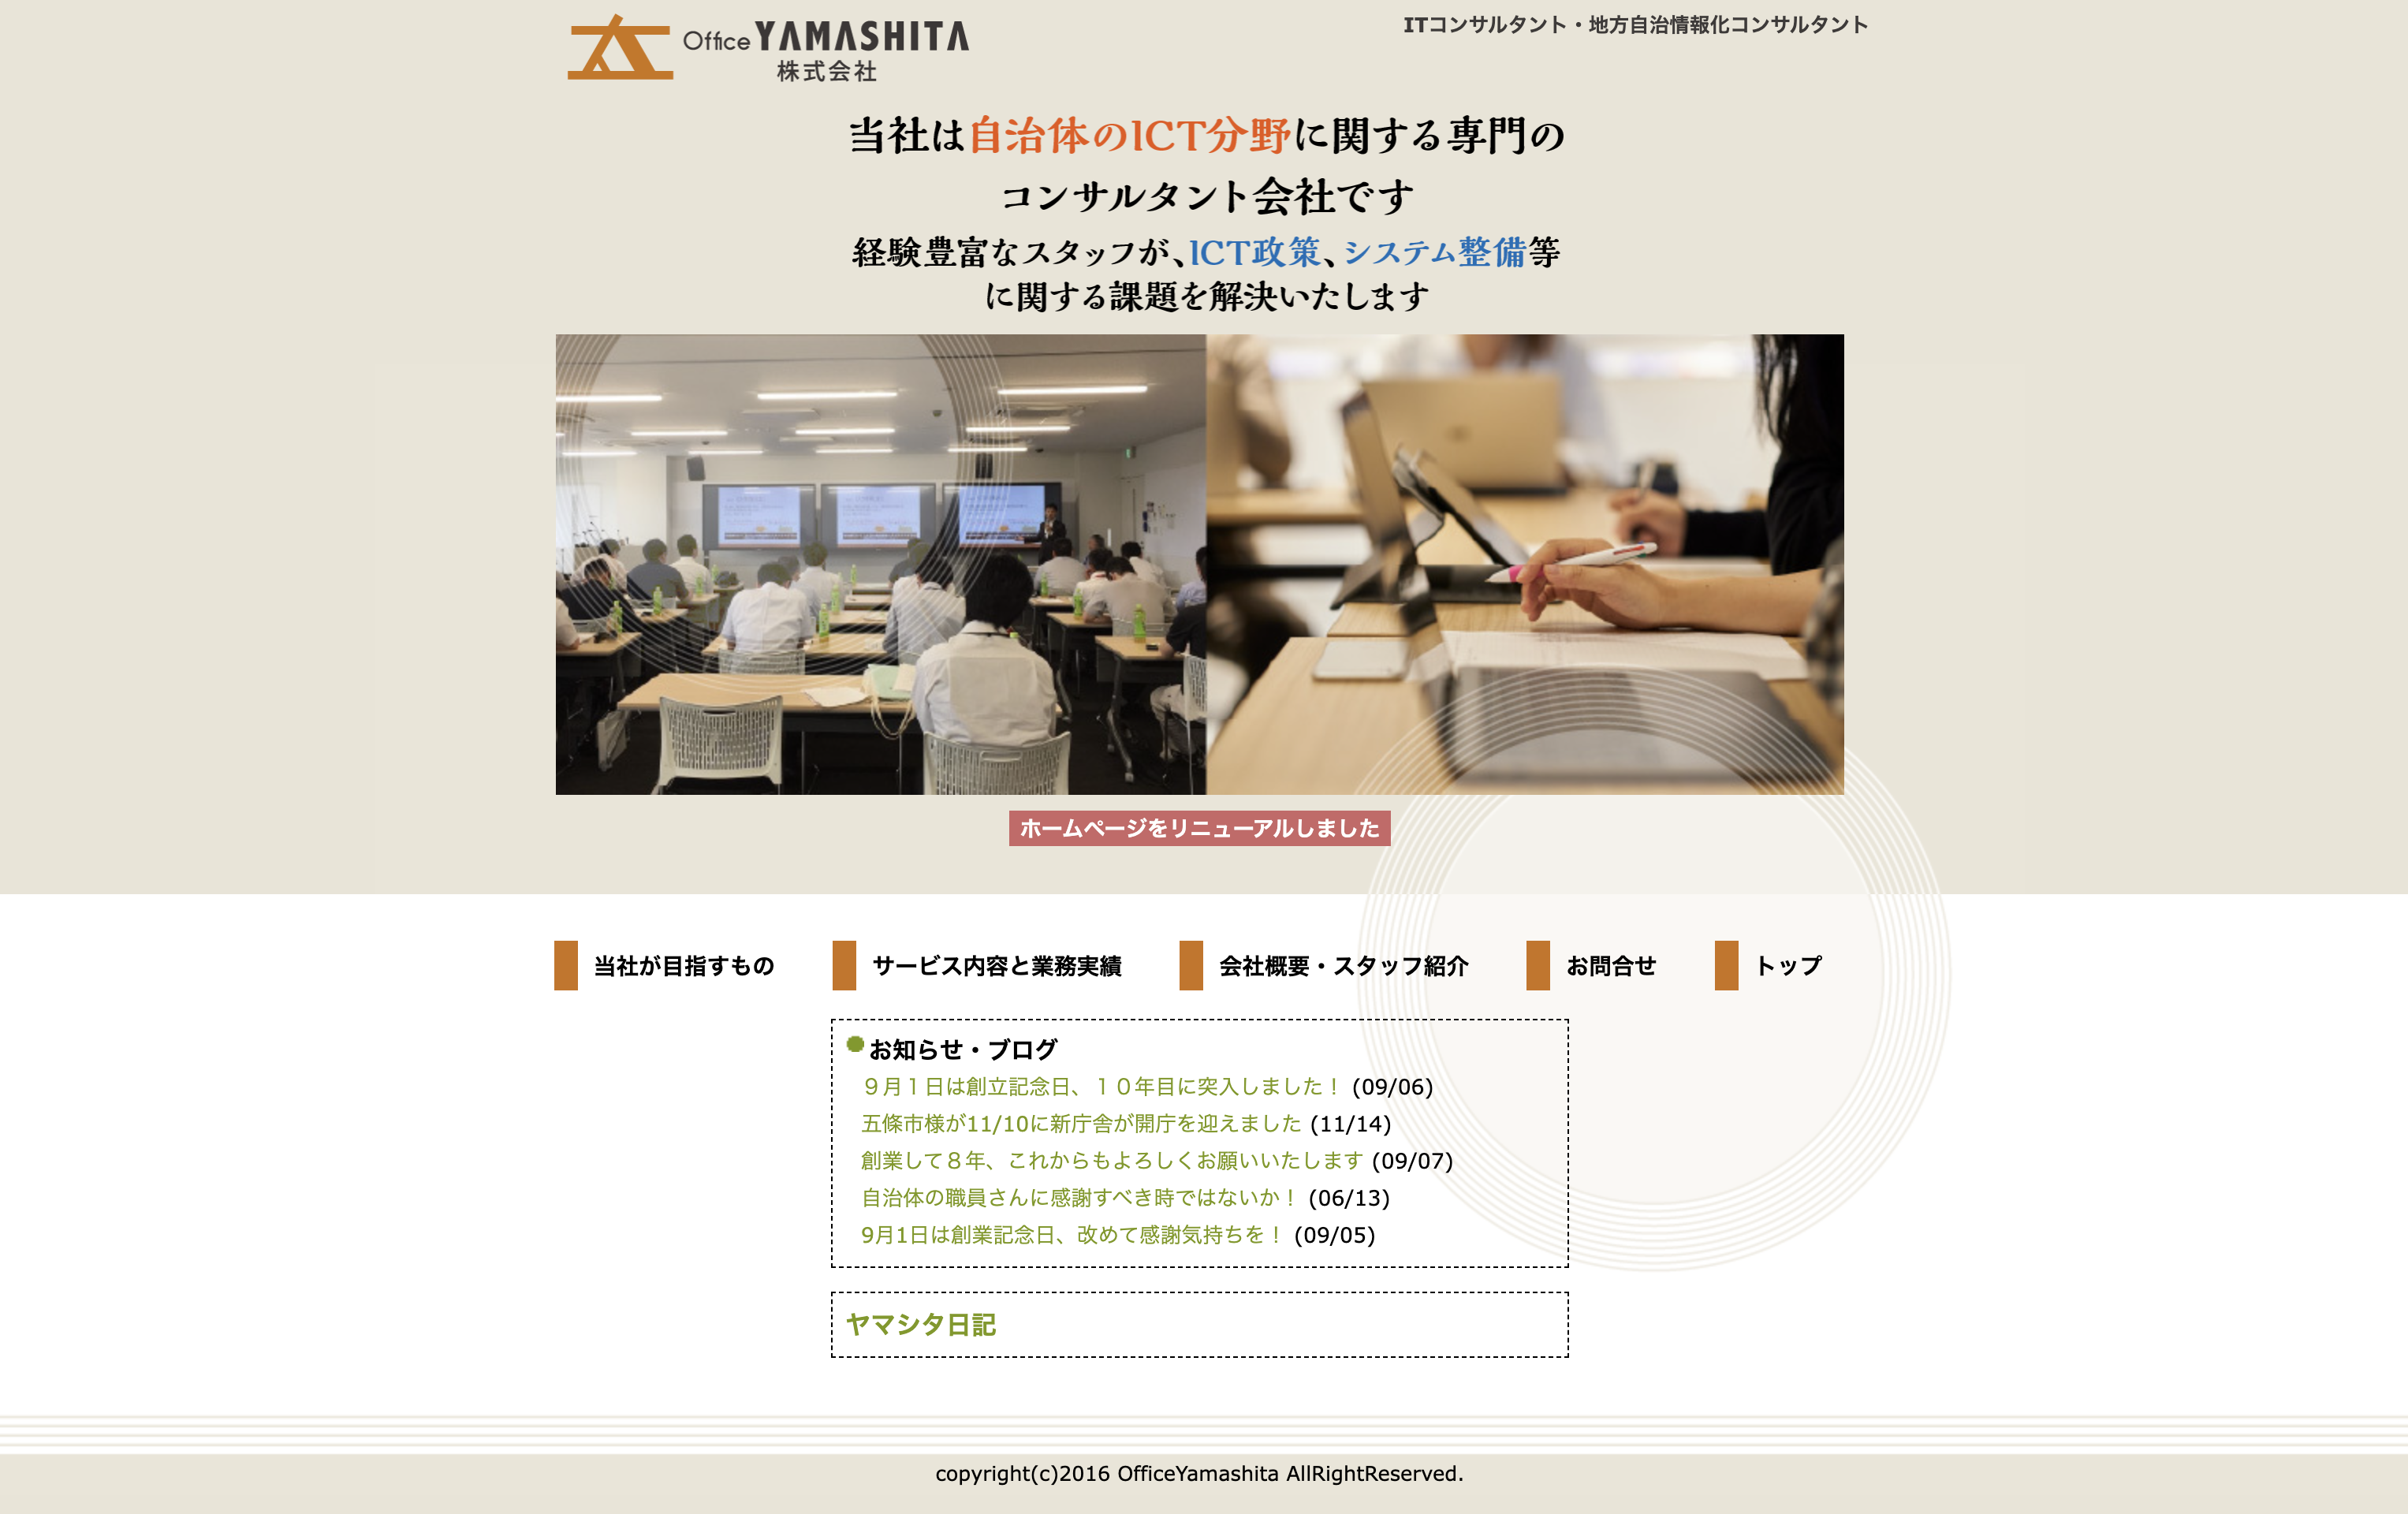 OfficeYAMASHITA株式会社のOfficeYAMASHITA株式会社:ITインフラ構築サービス